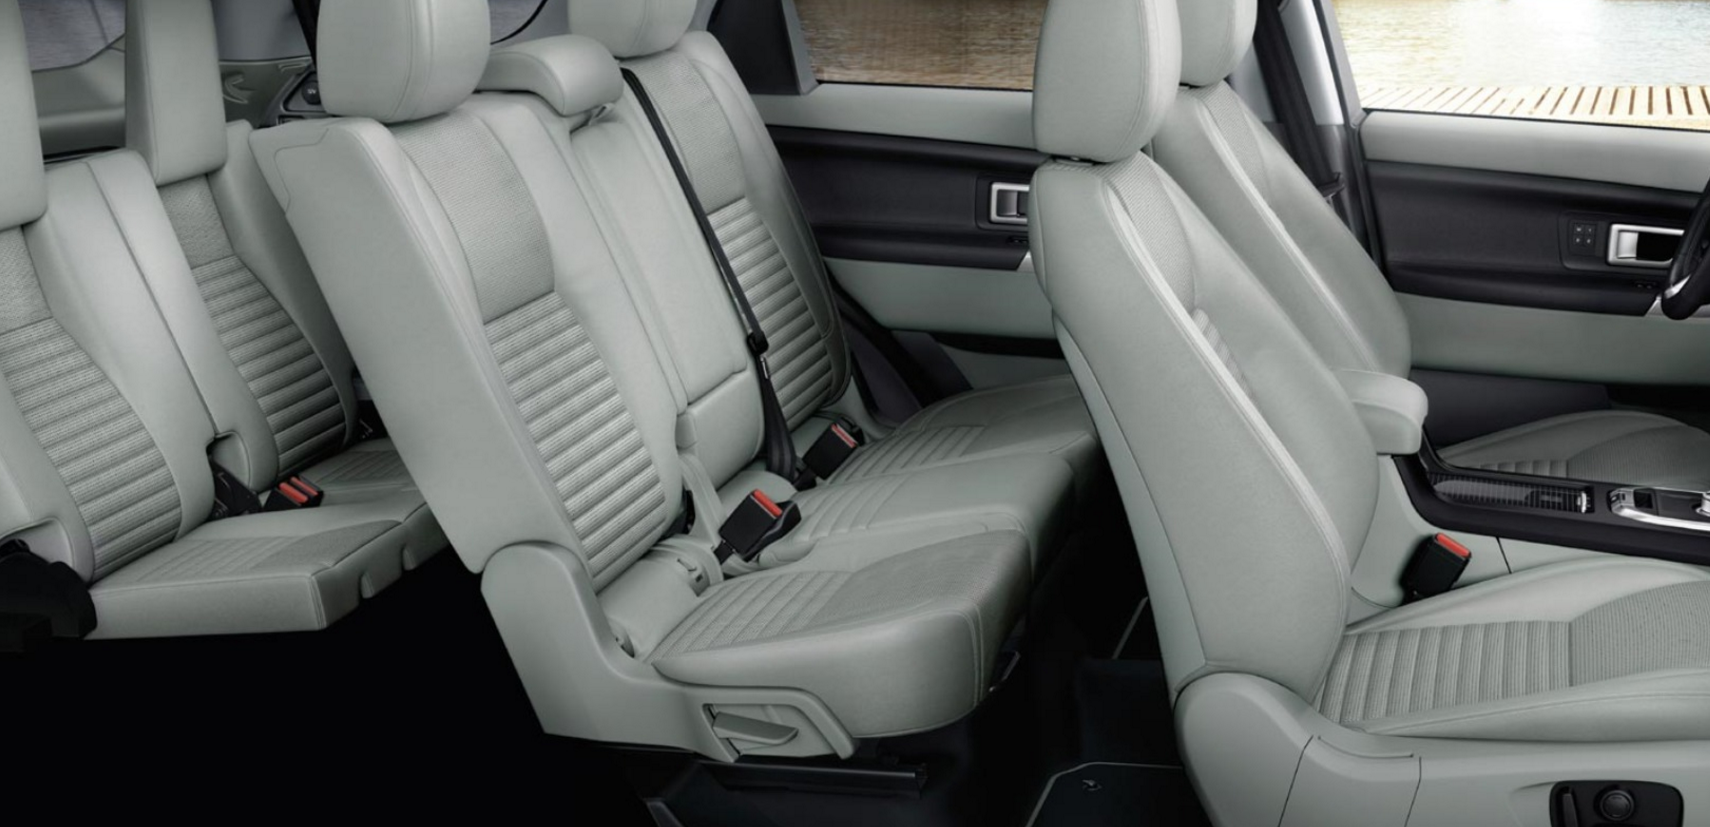 zwaar Inspecteren tiener Land Rover Discovery Sport Trim Options: SE, HSE, and HSE Luxury